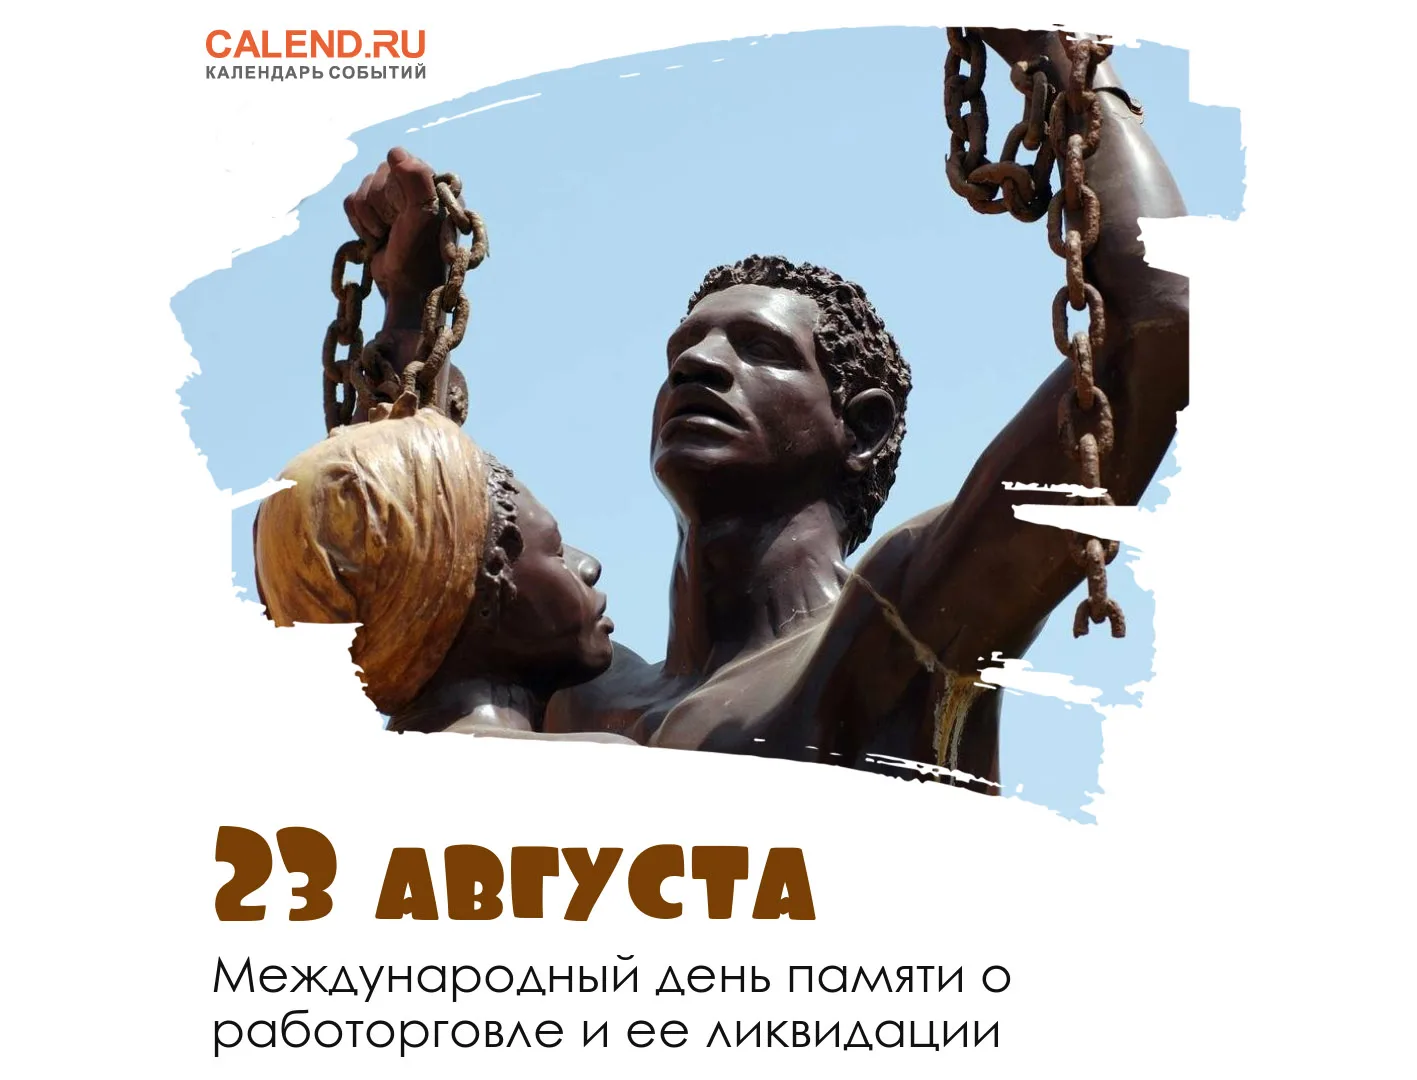 Праздник 25 августа. Международный день памяти о работорговле и ее ликвидации. 23 Августа день памяти о работорговле. День памяти работорговли. День памяти жертв рабства.